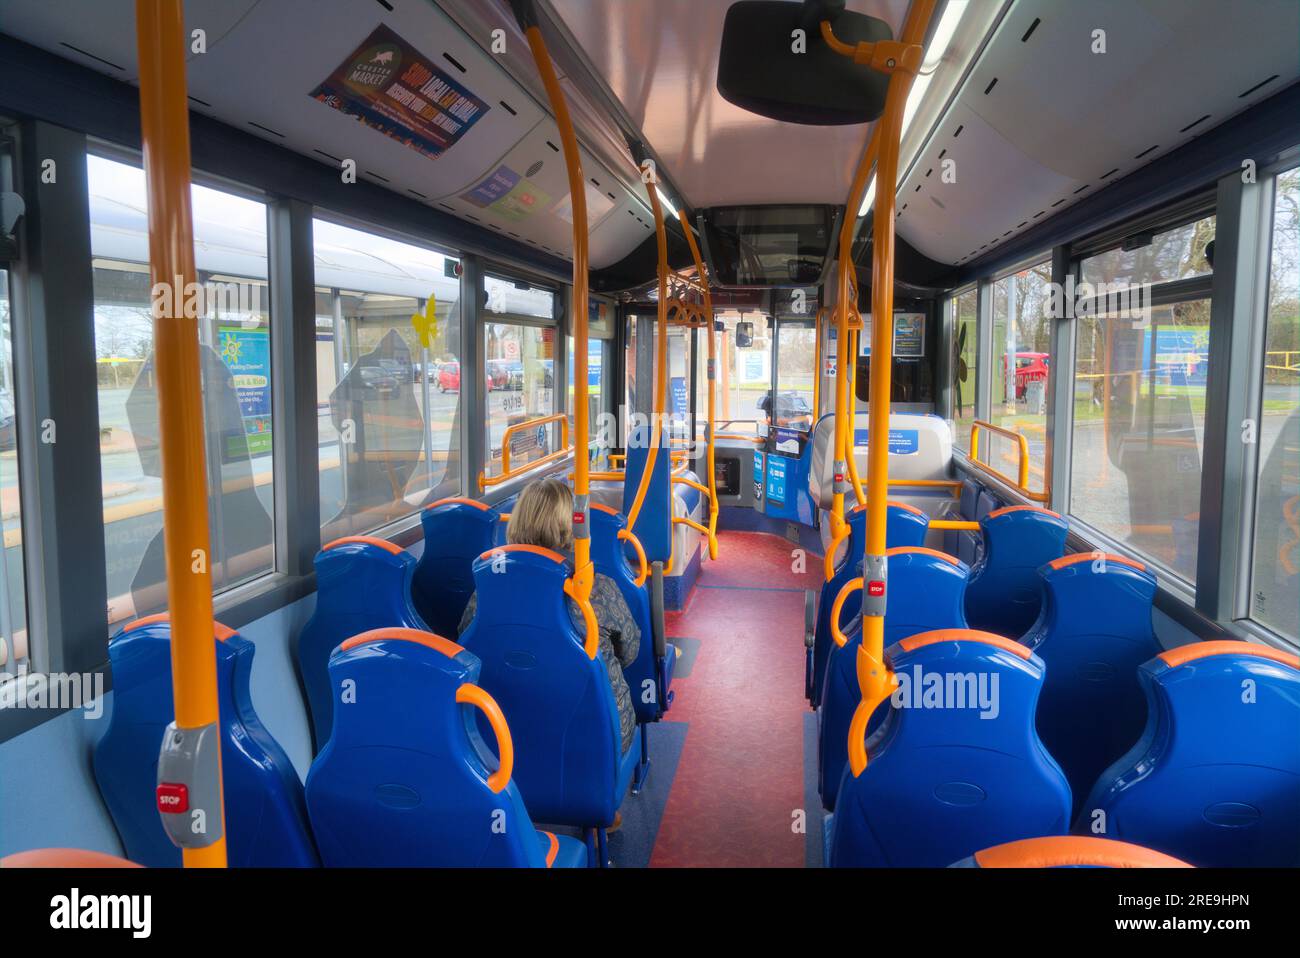 Regarder du bus à Upton Park et Ride au zoo de Chester. Ville de Chester, transports. Chester, Cheshire, Angleterre, Royaume-Uni Banque D'Images